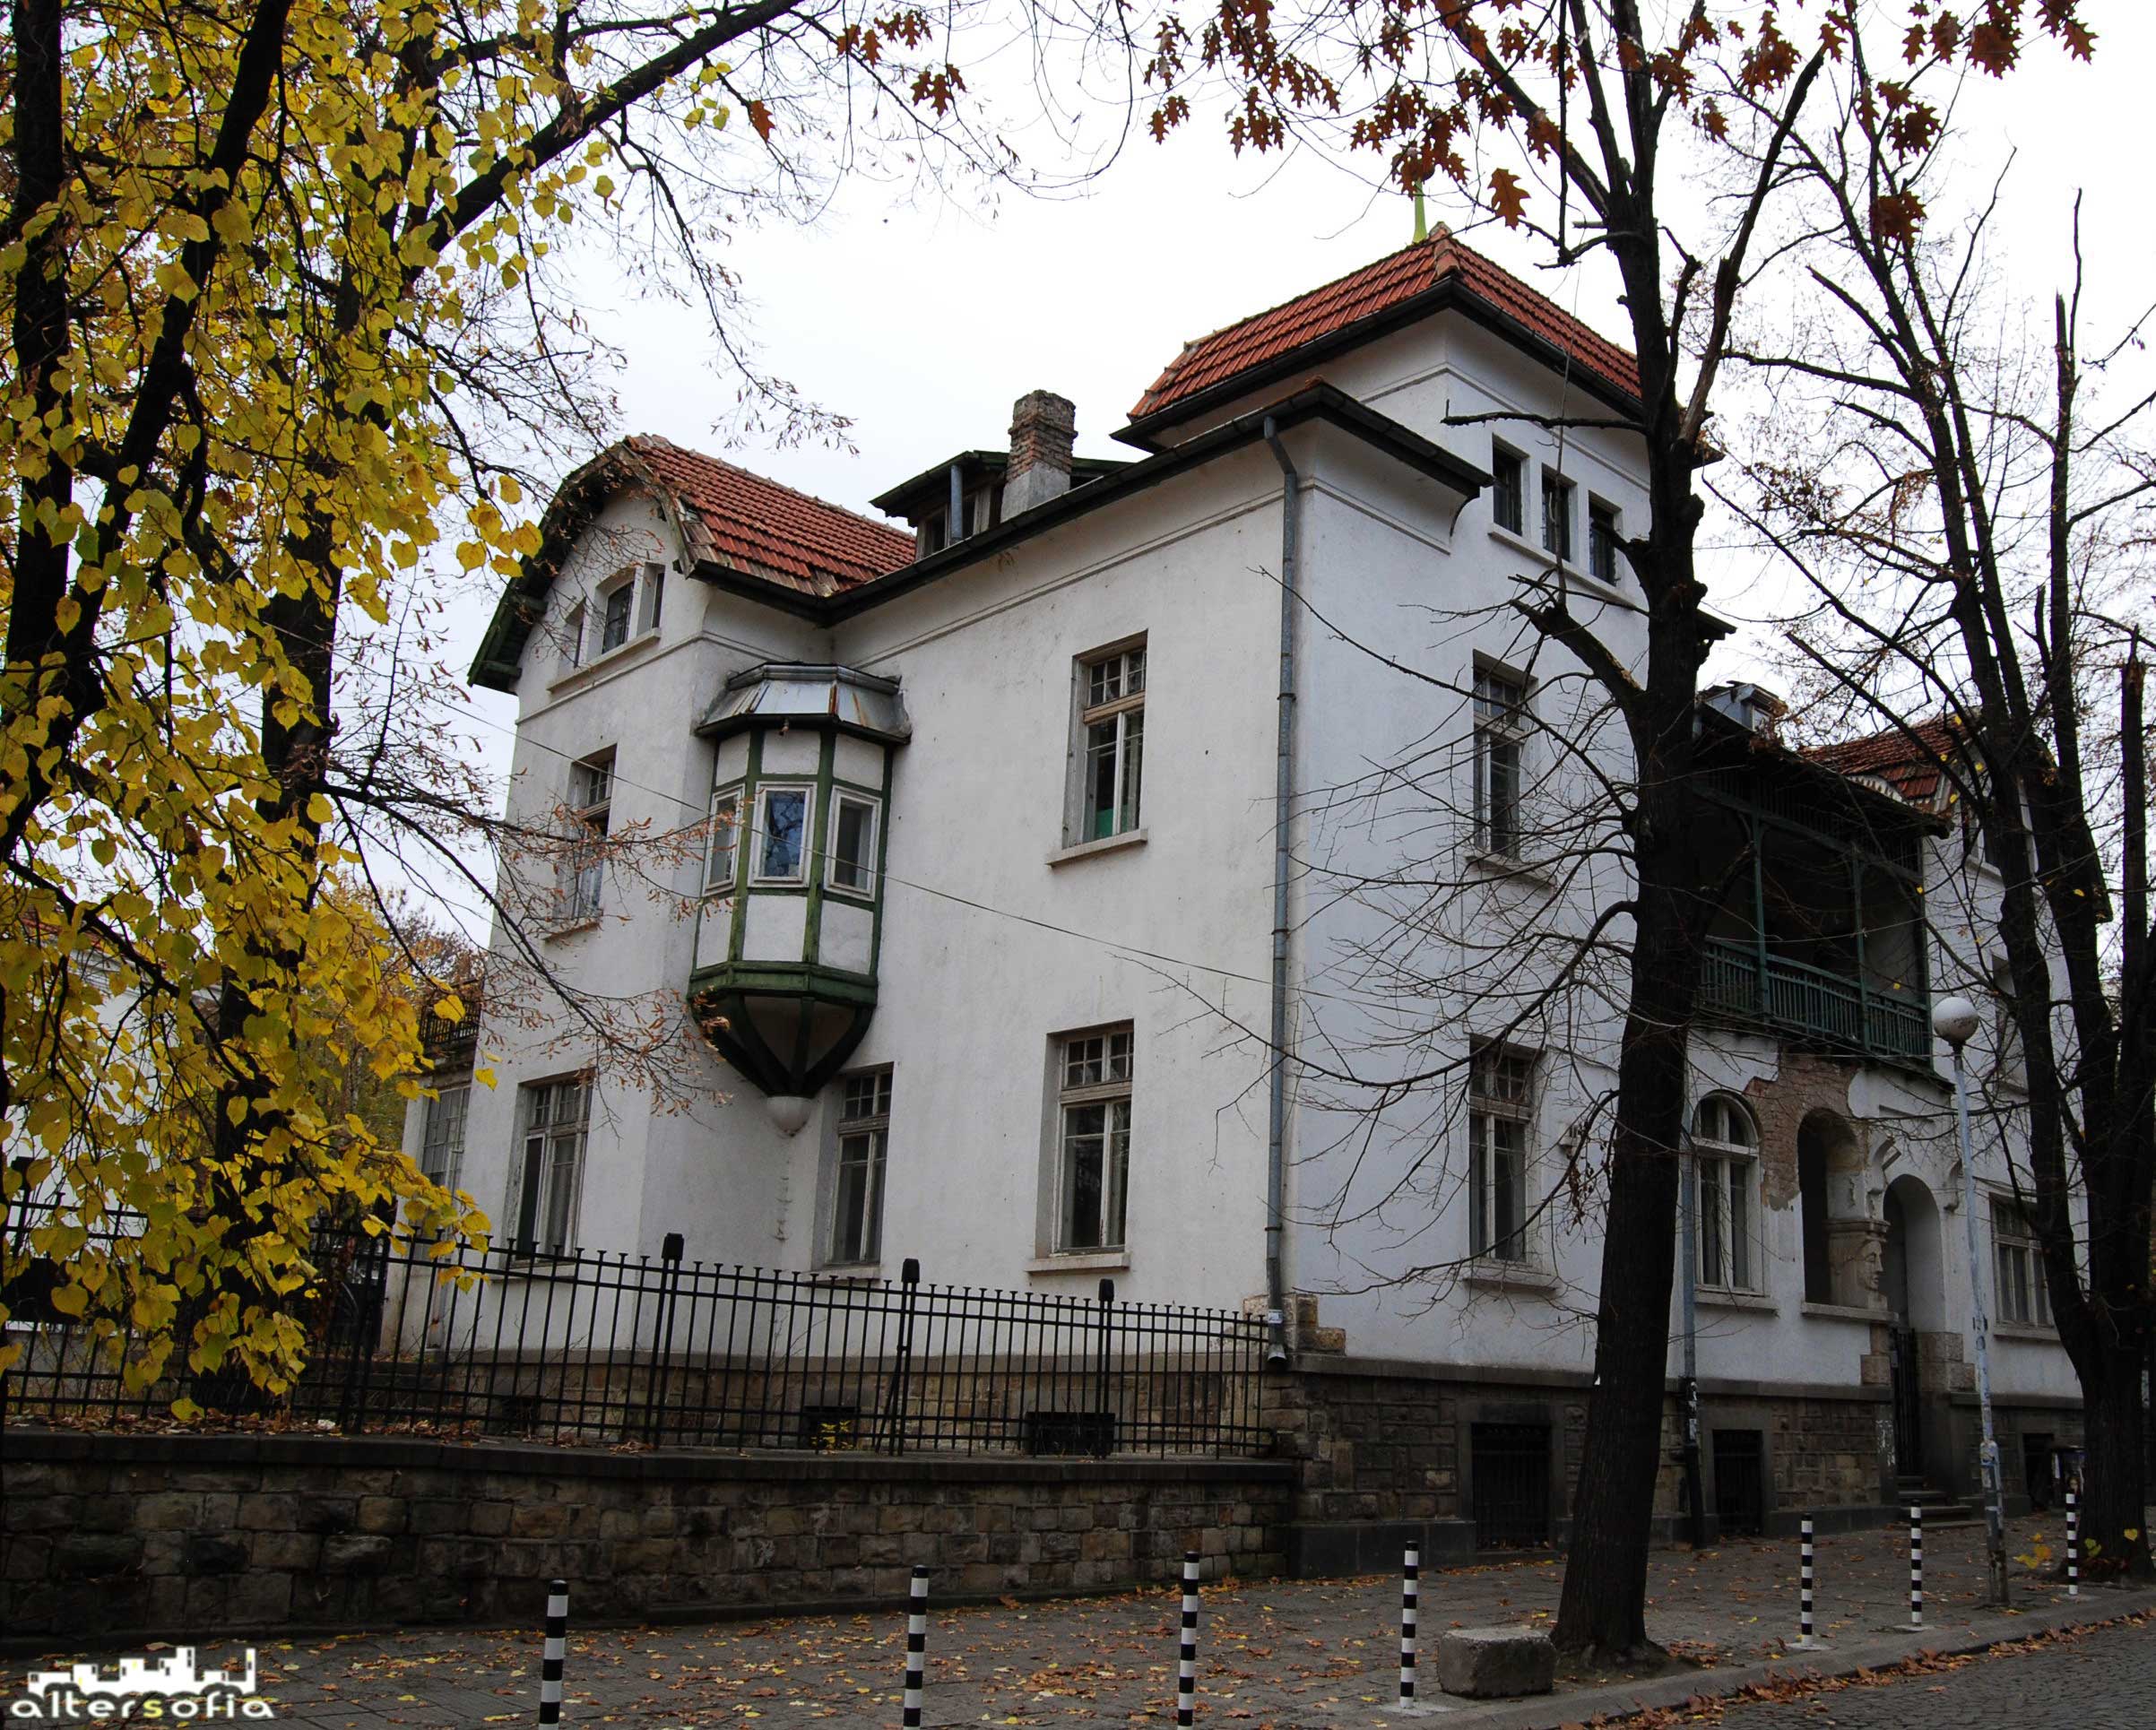 Възражда ли се архитектурното наследство в София?